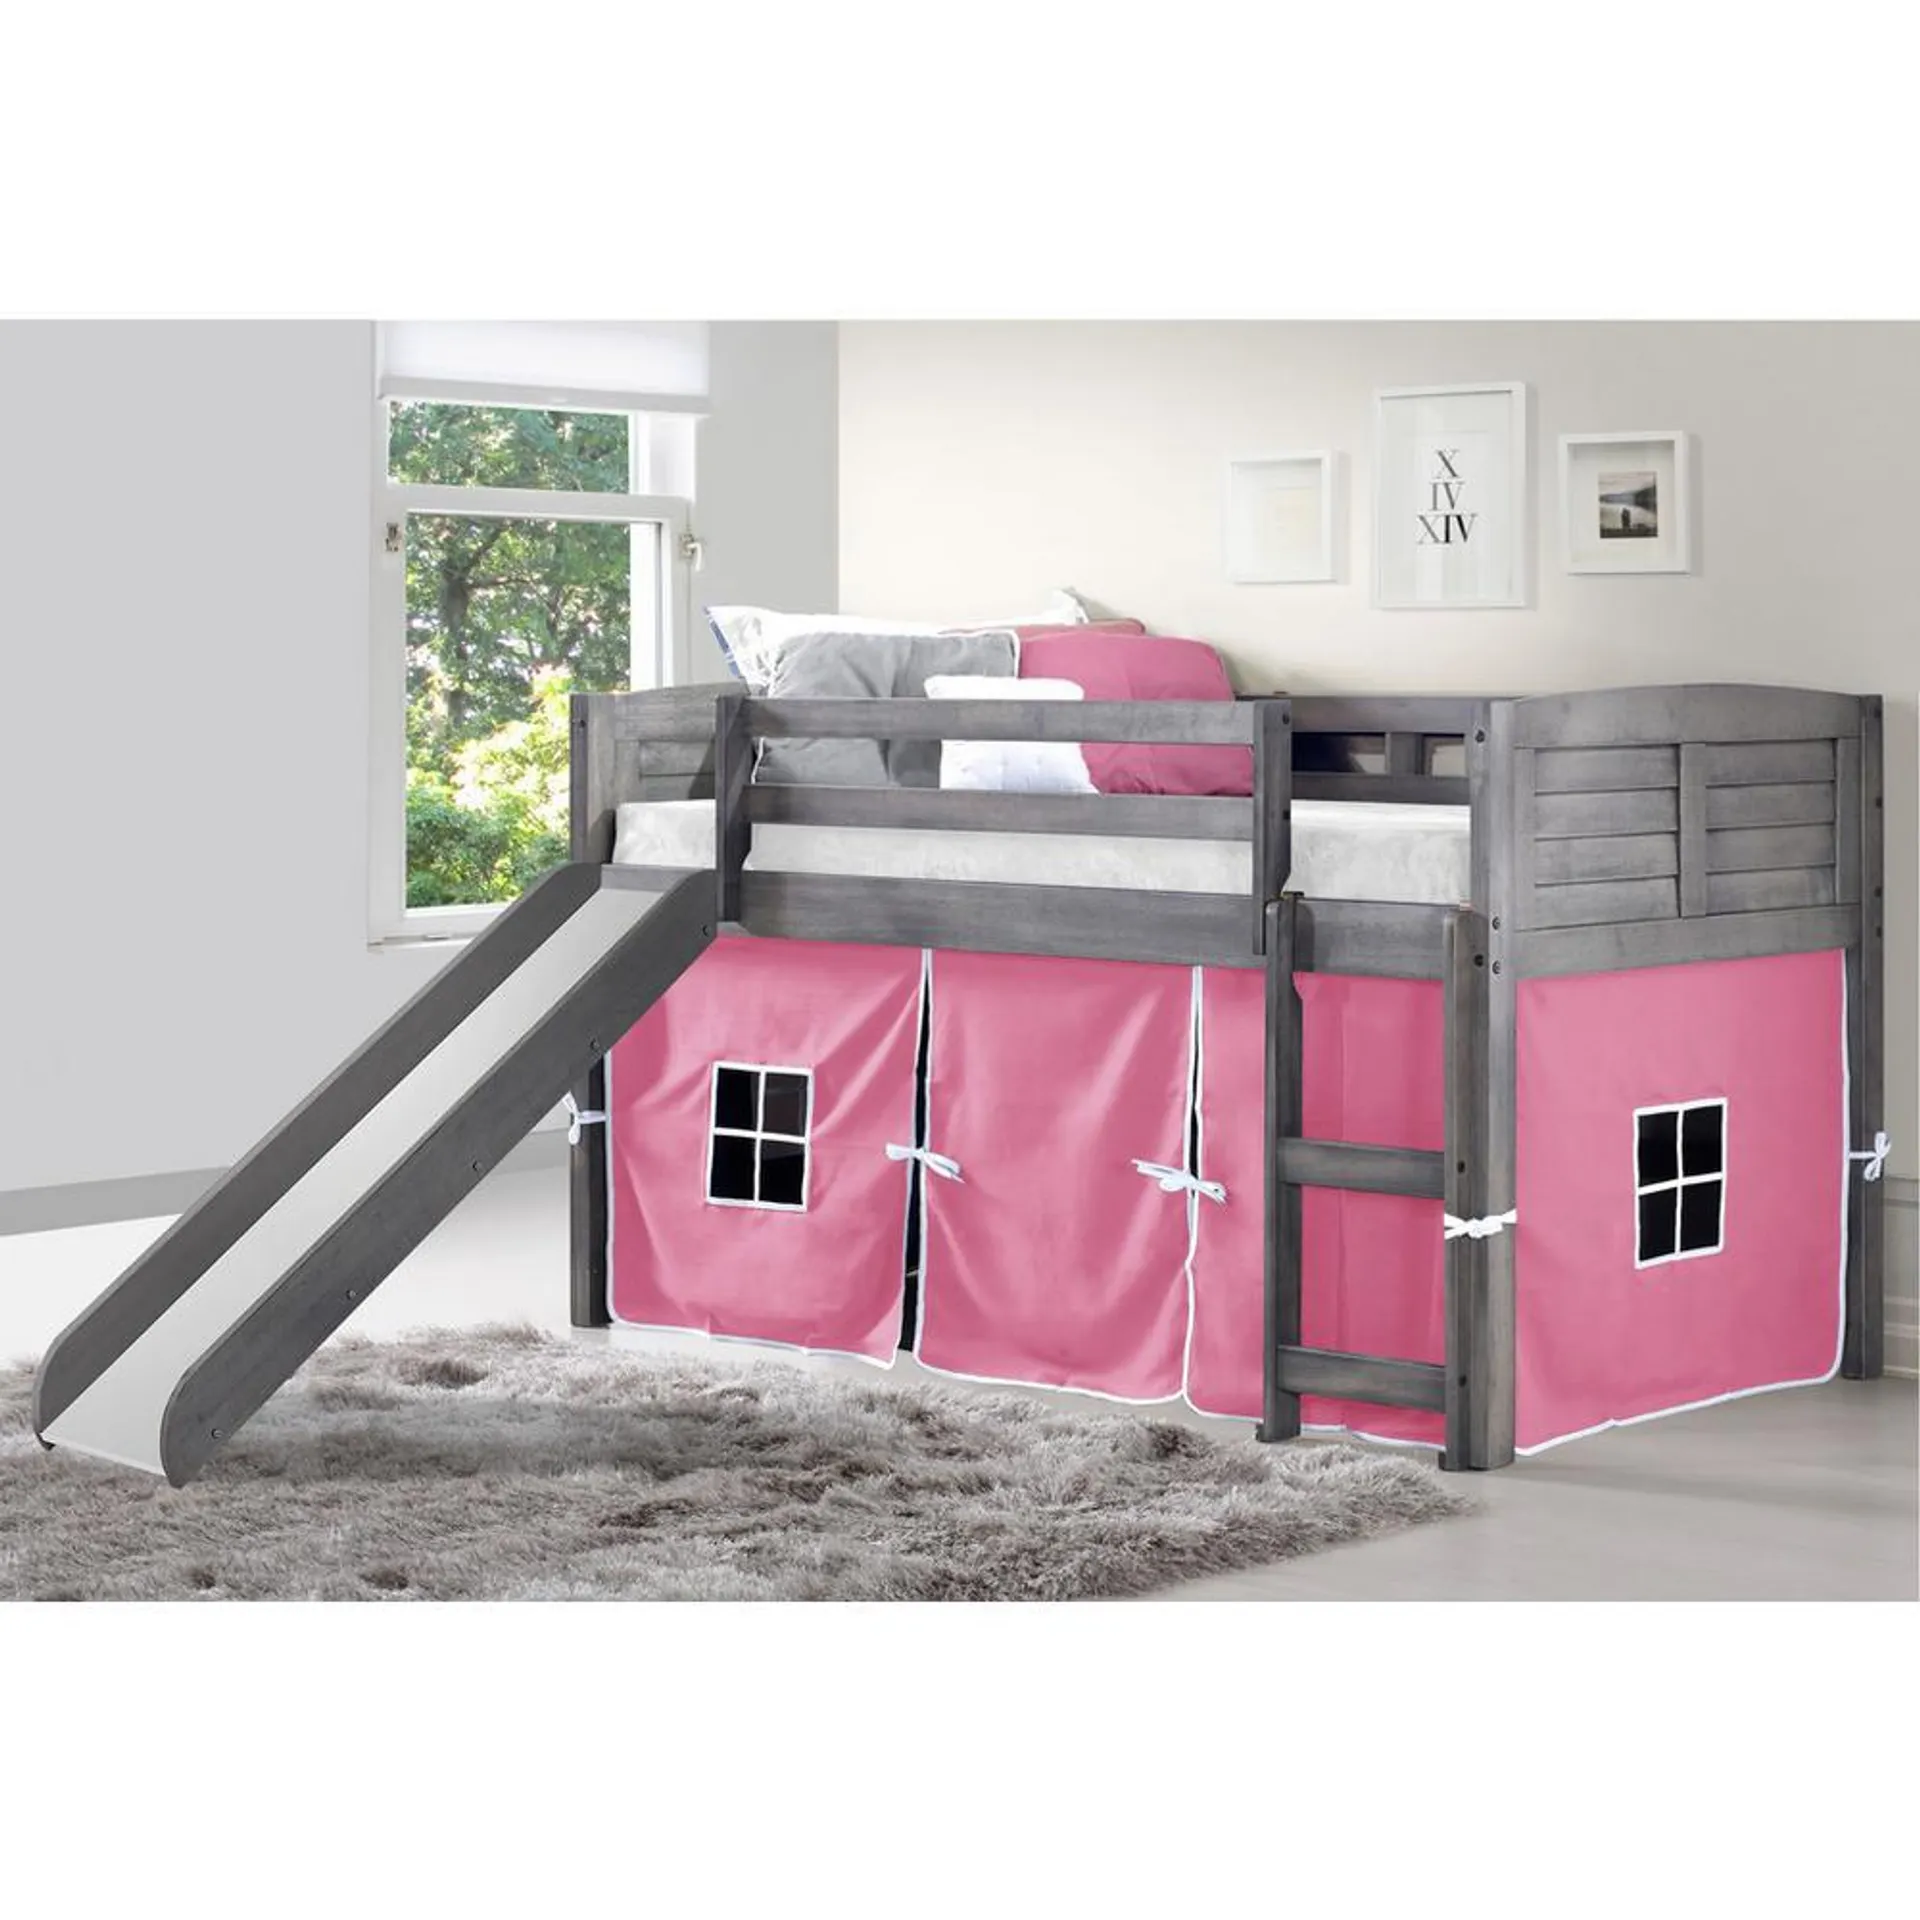 Low Loft Bed Antique Grey Pink Tent & Slide